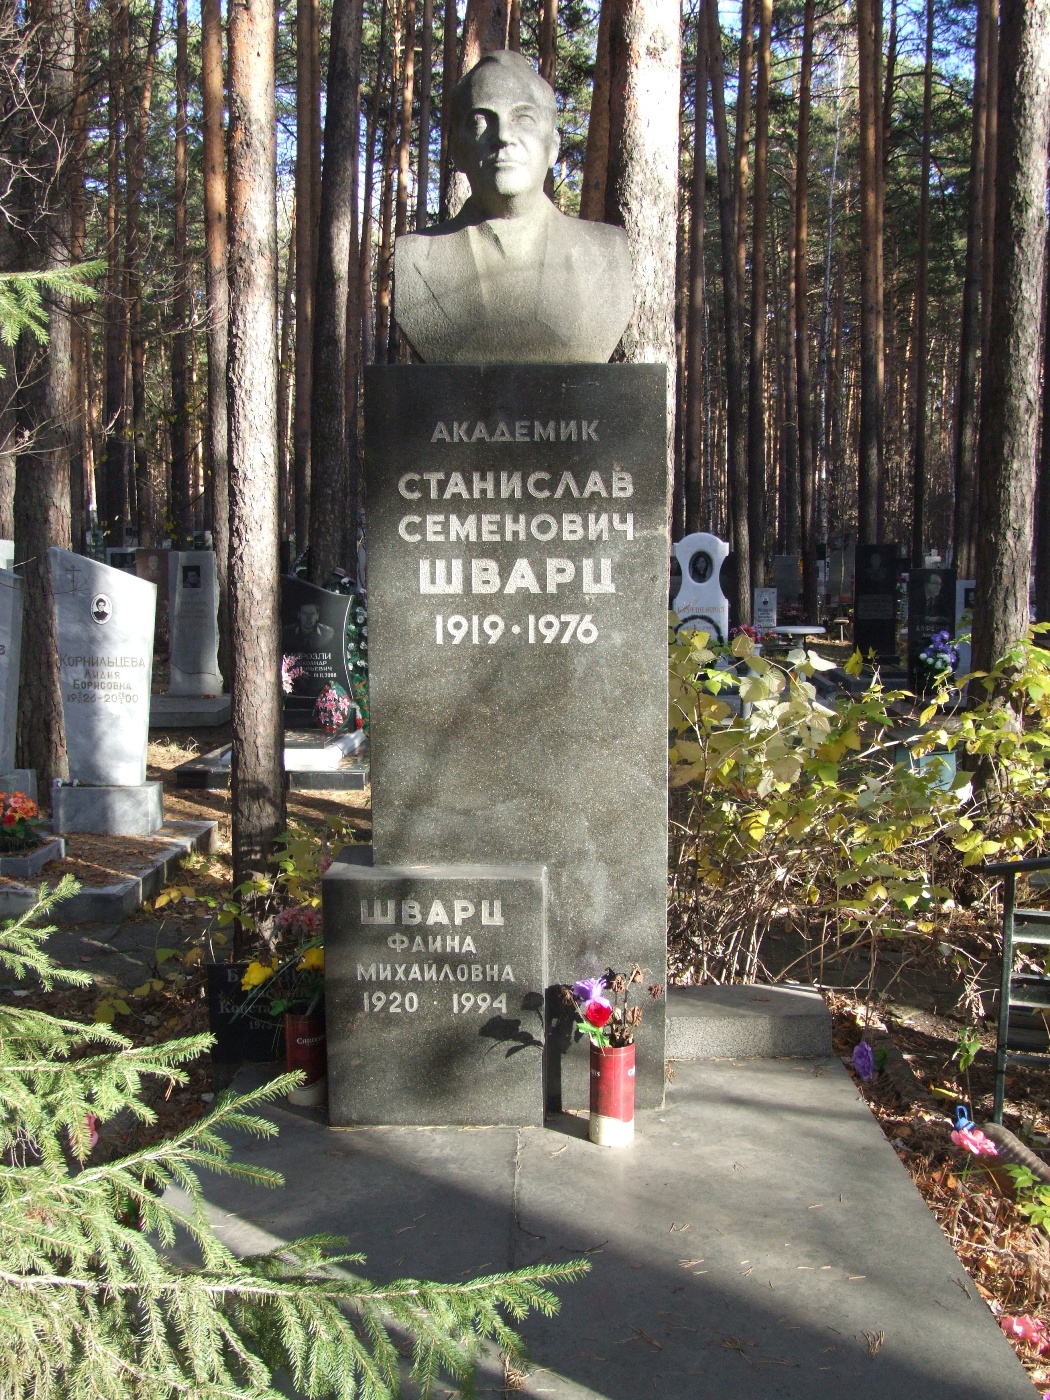 Надгробие на могиле Шварца Станислава Семеновича (1919-1976), Екатеринбург, Широкореченское кладбище, секция Почетных захоронений.